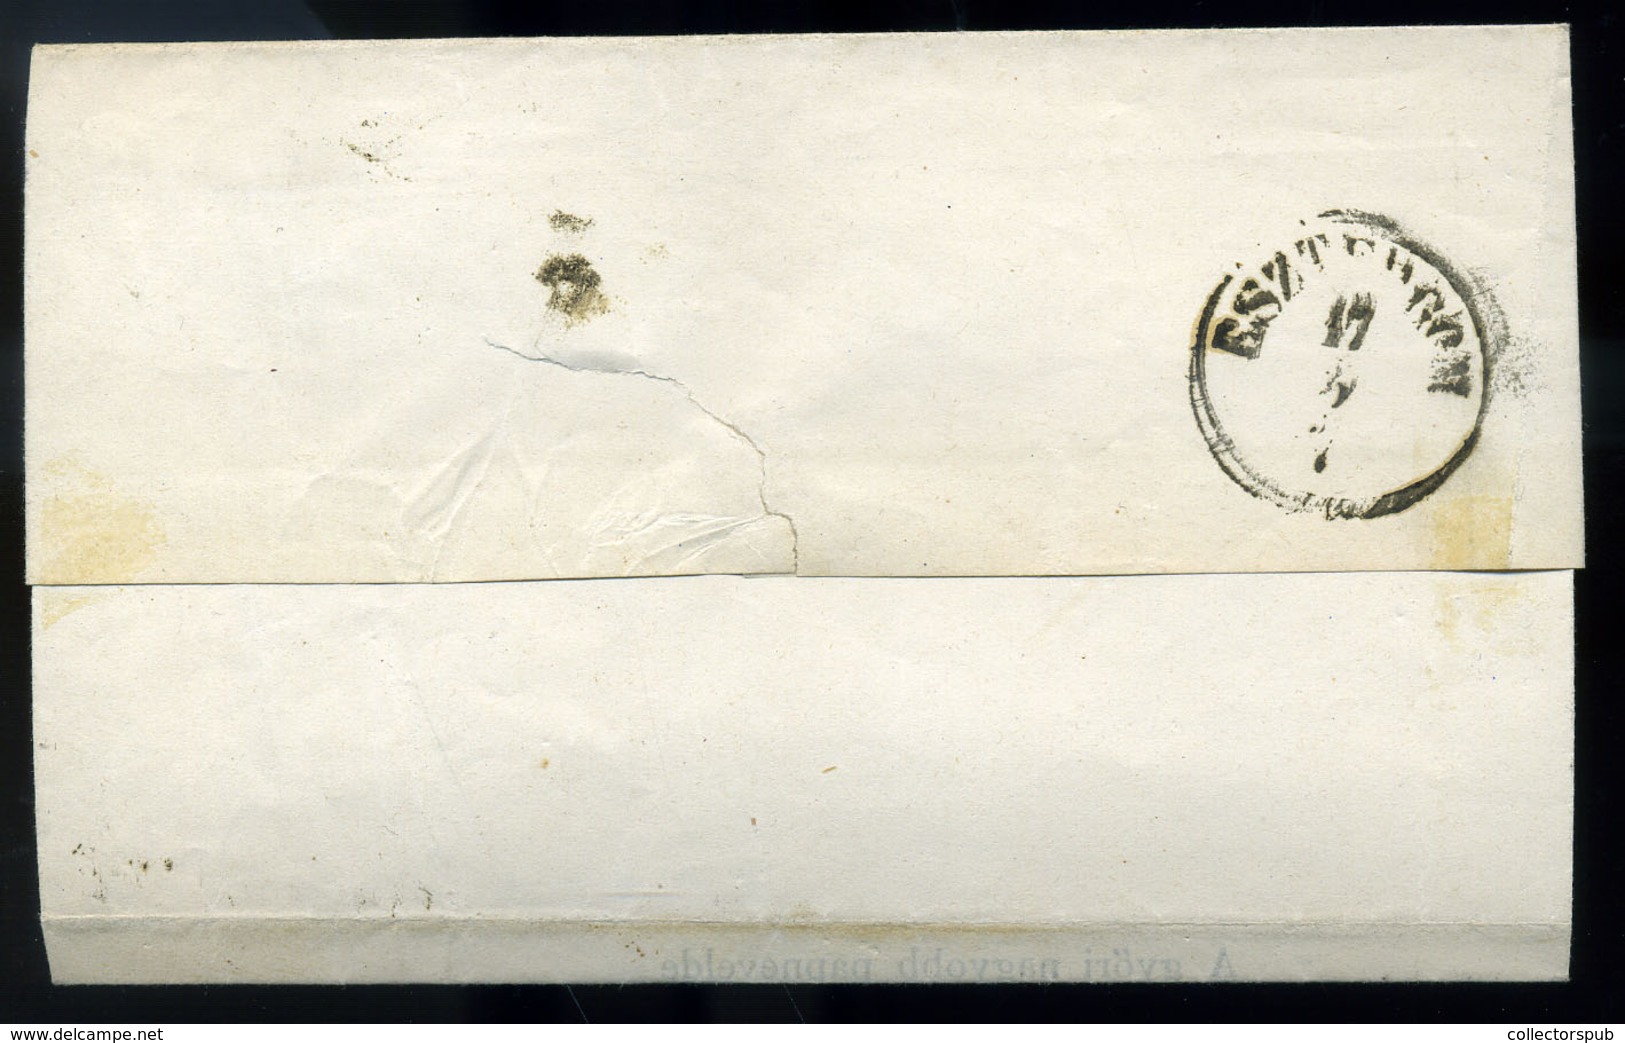 GYŐR 1867. Postázott 2kr-os Levél, Szent Imre Egylet - Gebruikt